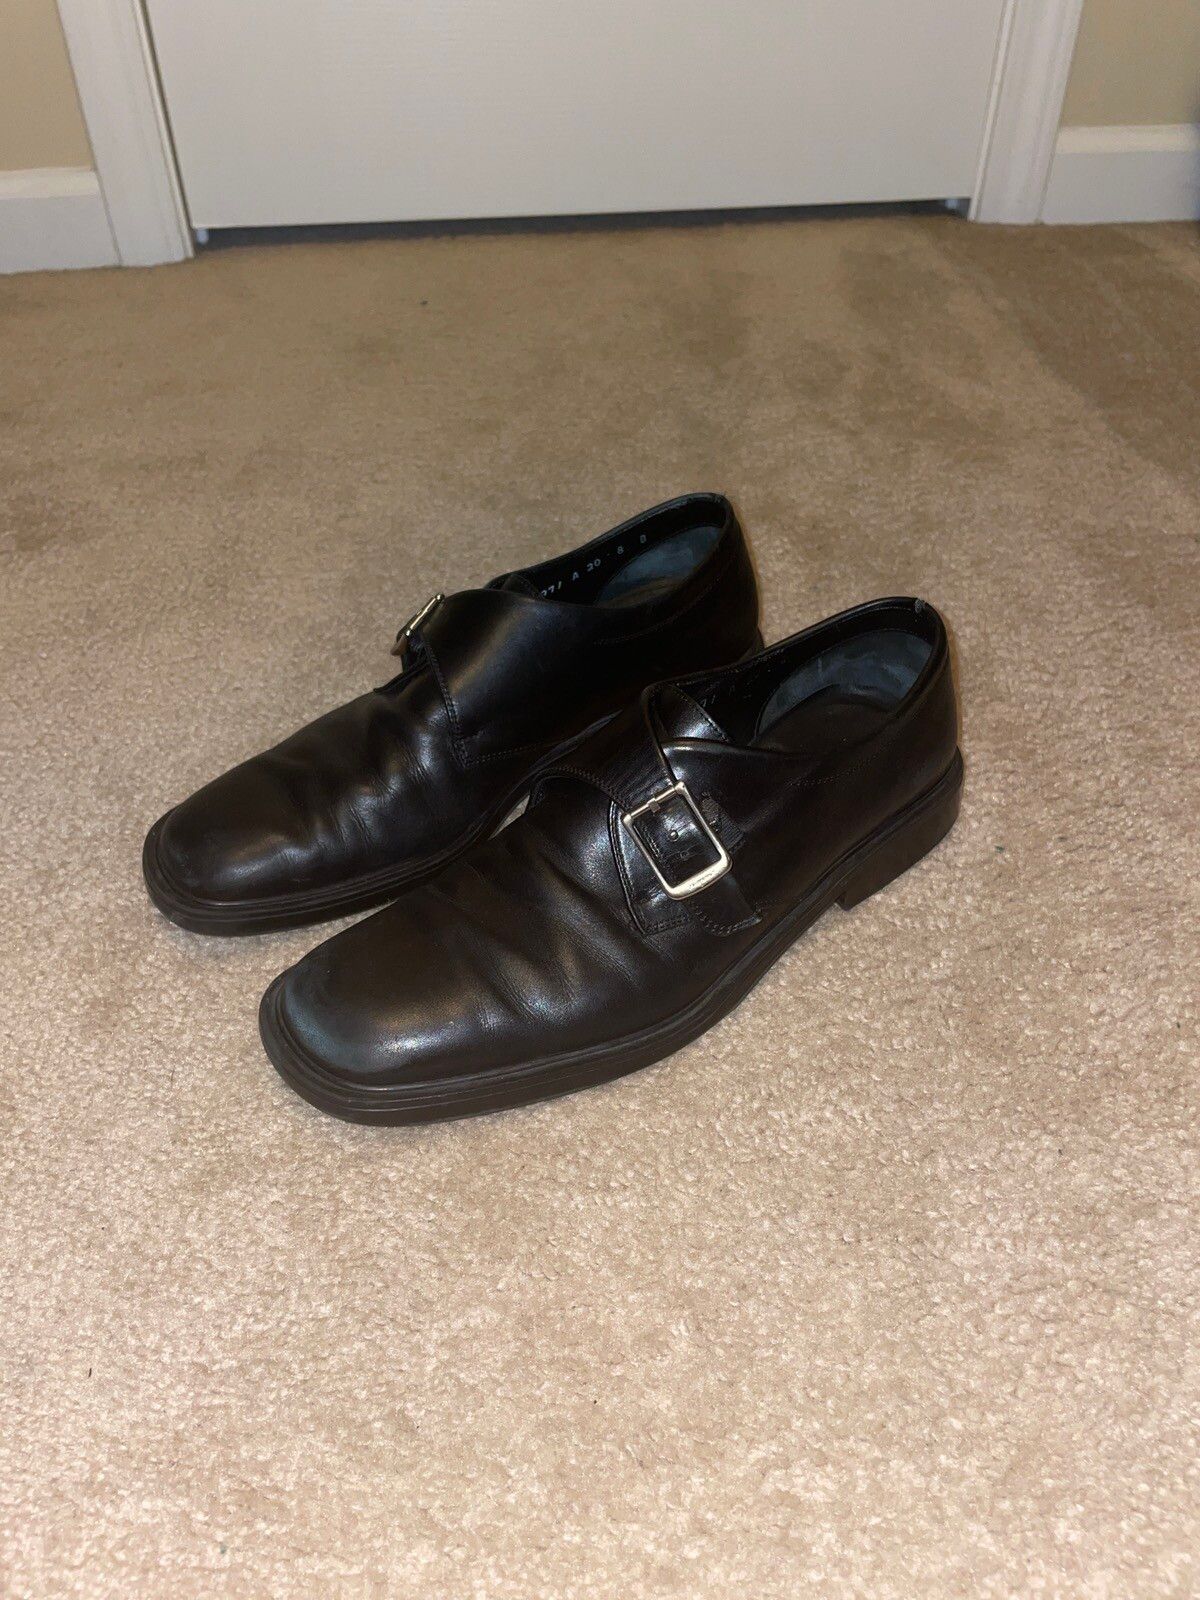 Vintage Vintage Ferragamo Loafers Size US 8.5 / EU 41-42 - 1 Preview